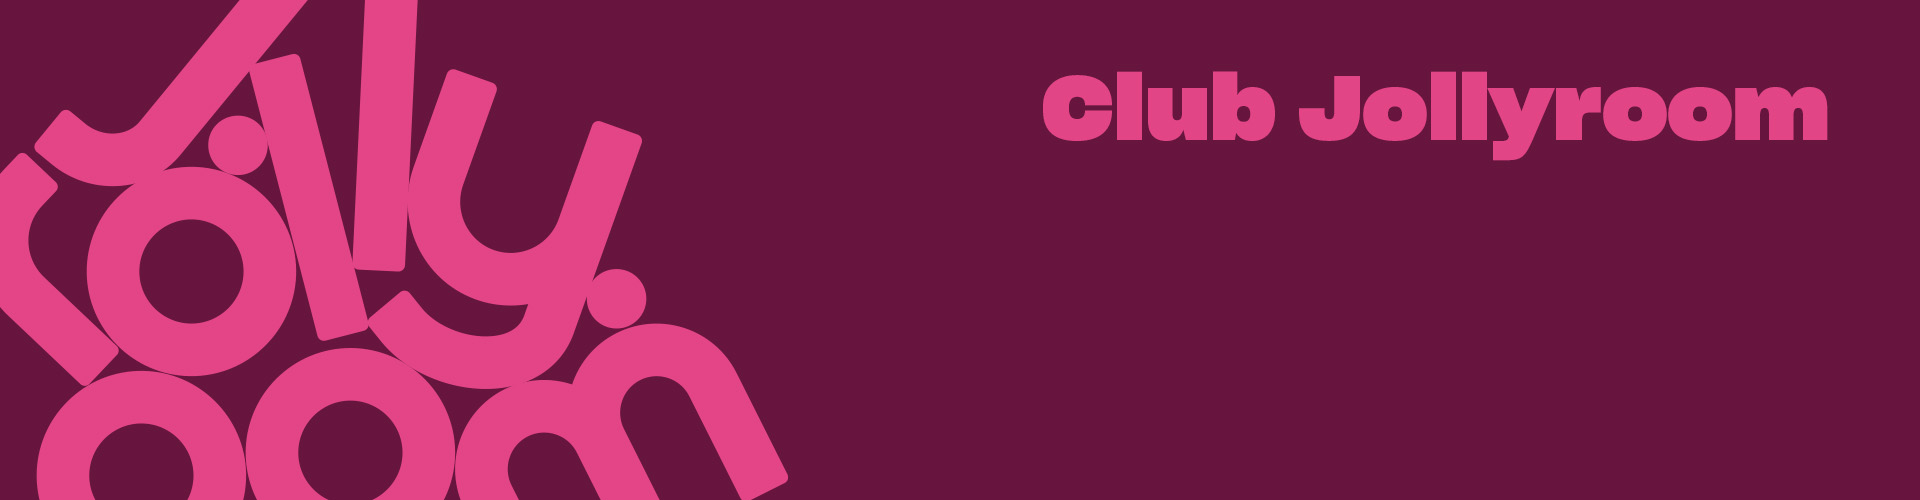 ClubJollyroom_Headerbanner.jpg